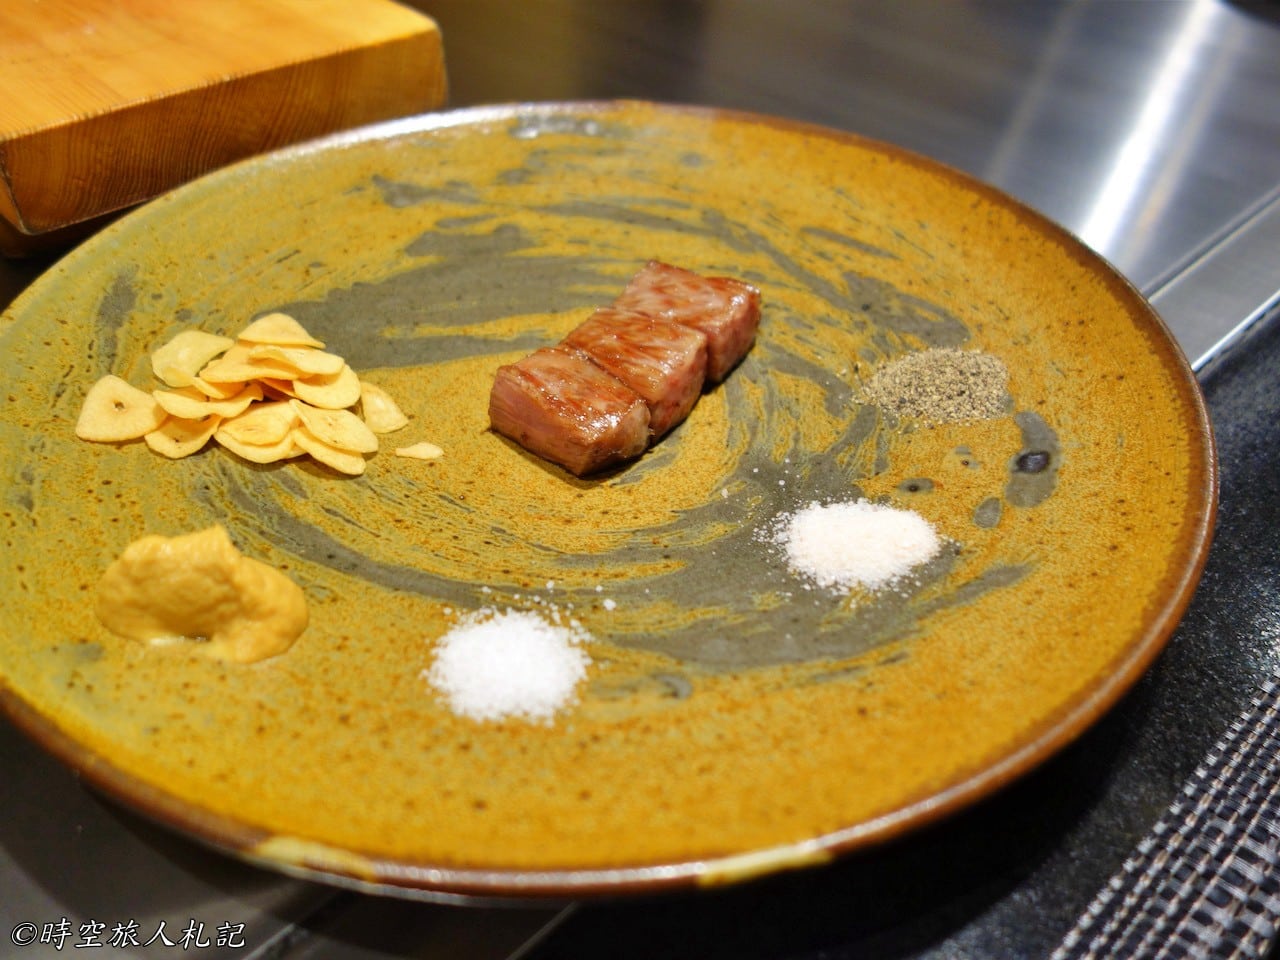 神戶美食,kobe-food,日本神戶美食 20